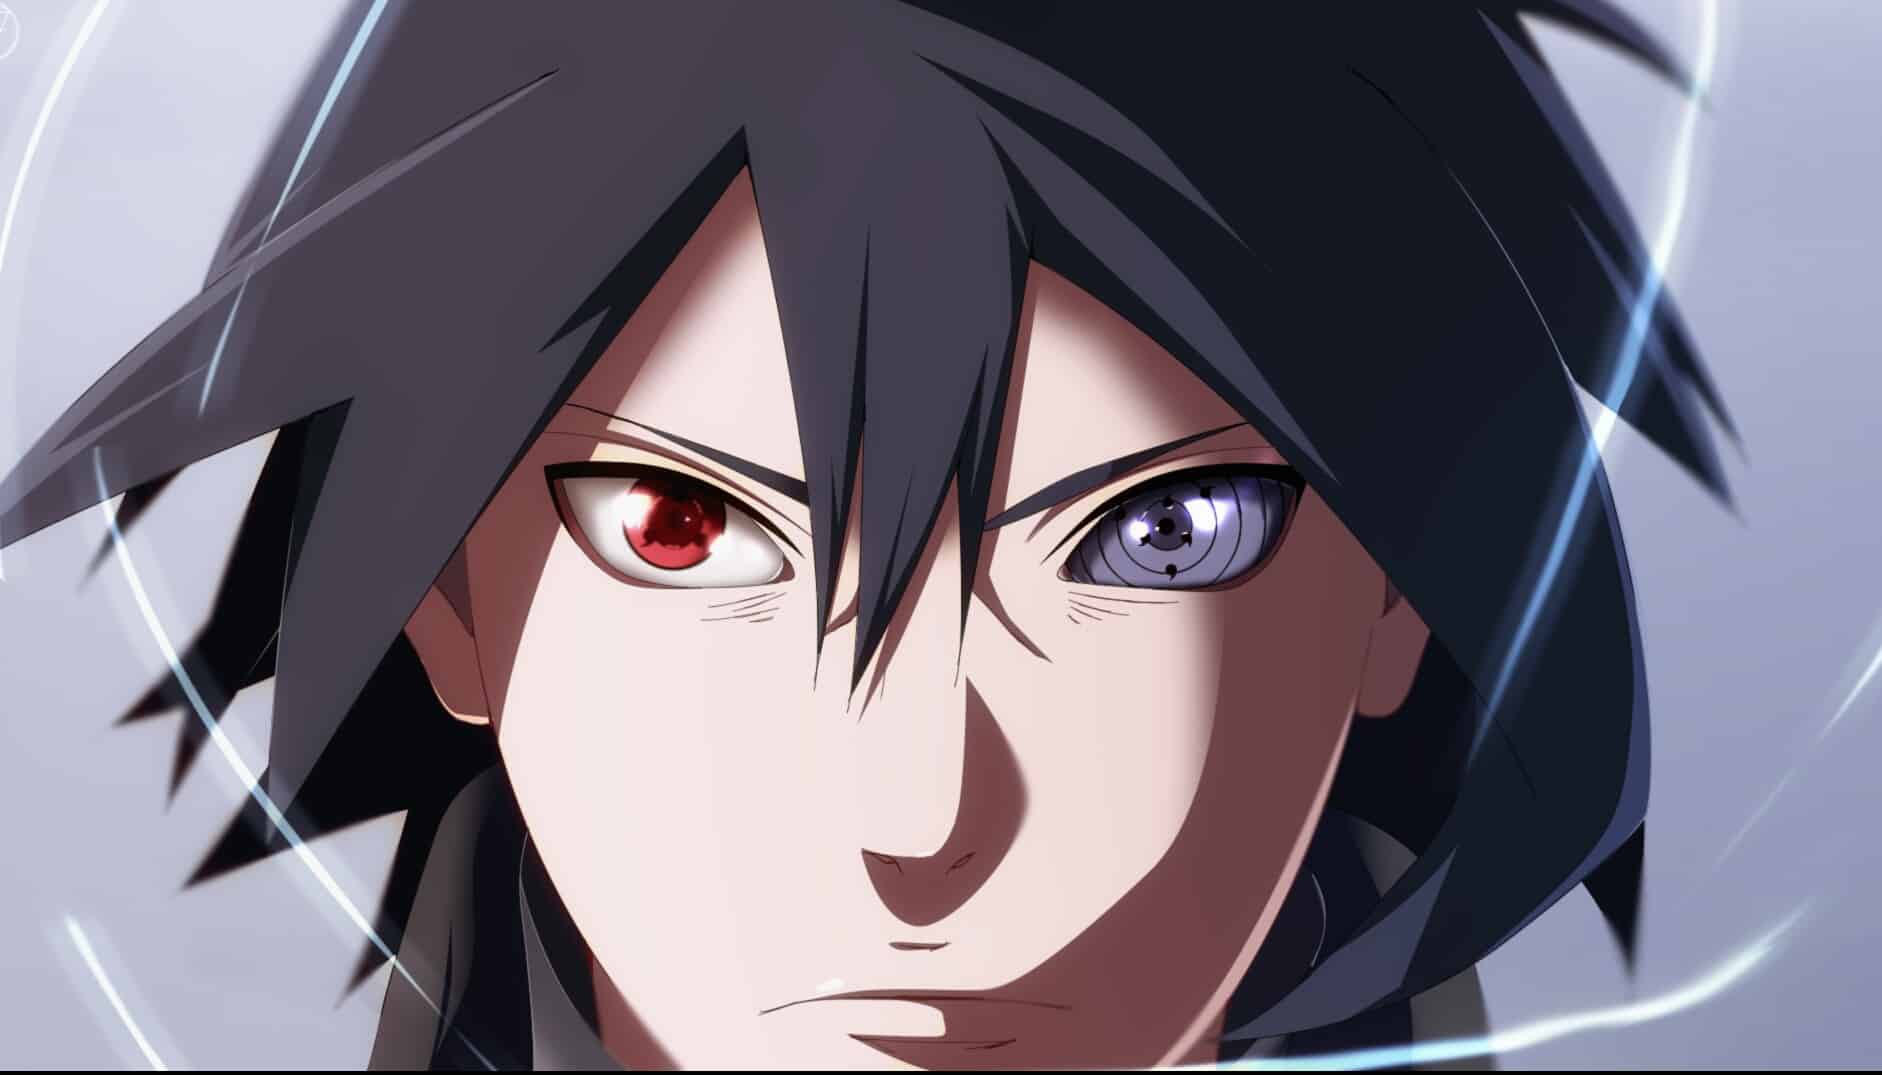 Uchiha Sasuke: Hãy đến xem hình ảnh Uchiha Sasuke, một nhân vật nổi tiếng trong bộ truyện tranh Naruto. Với tính cách mạnh mẽ, thông minh và ngoại hình đẹp trai, Sasuke chắc chắn sẽ khiến bạn say đắm.